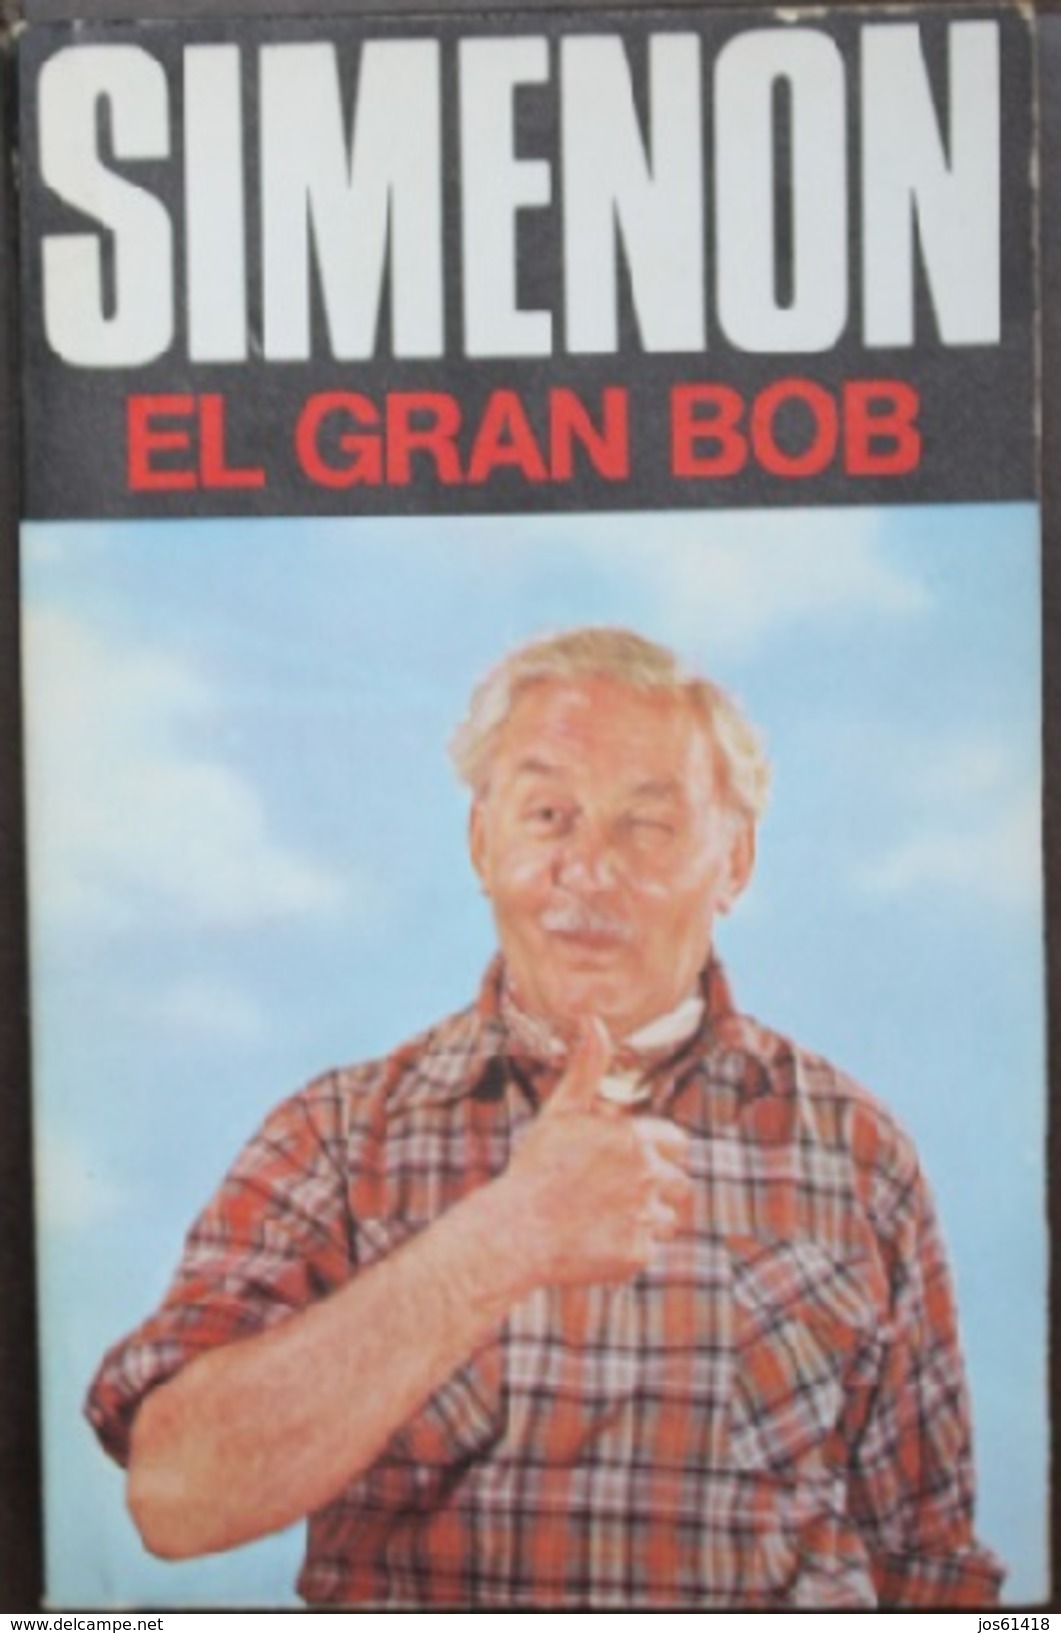 El Gran Bob  - George Simenón     Las Novelas De Simenón  Nº 50 - Acción, Aventuras